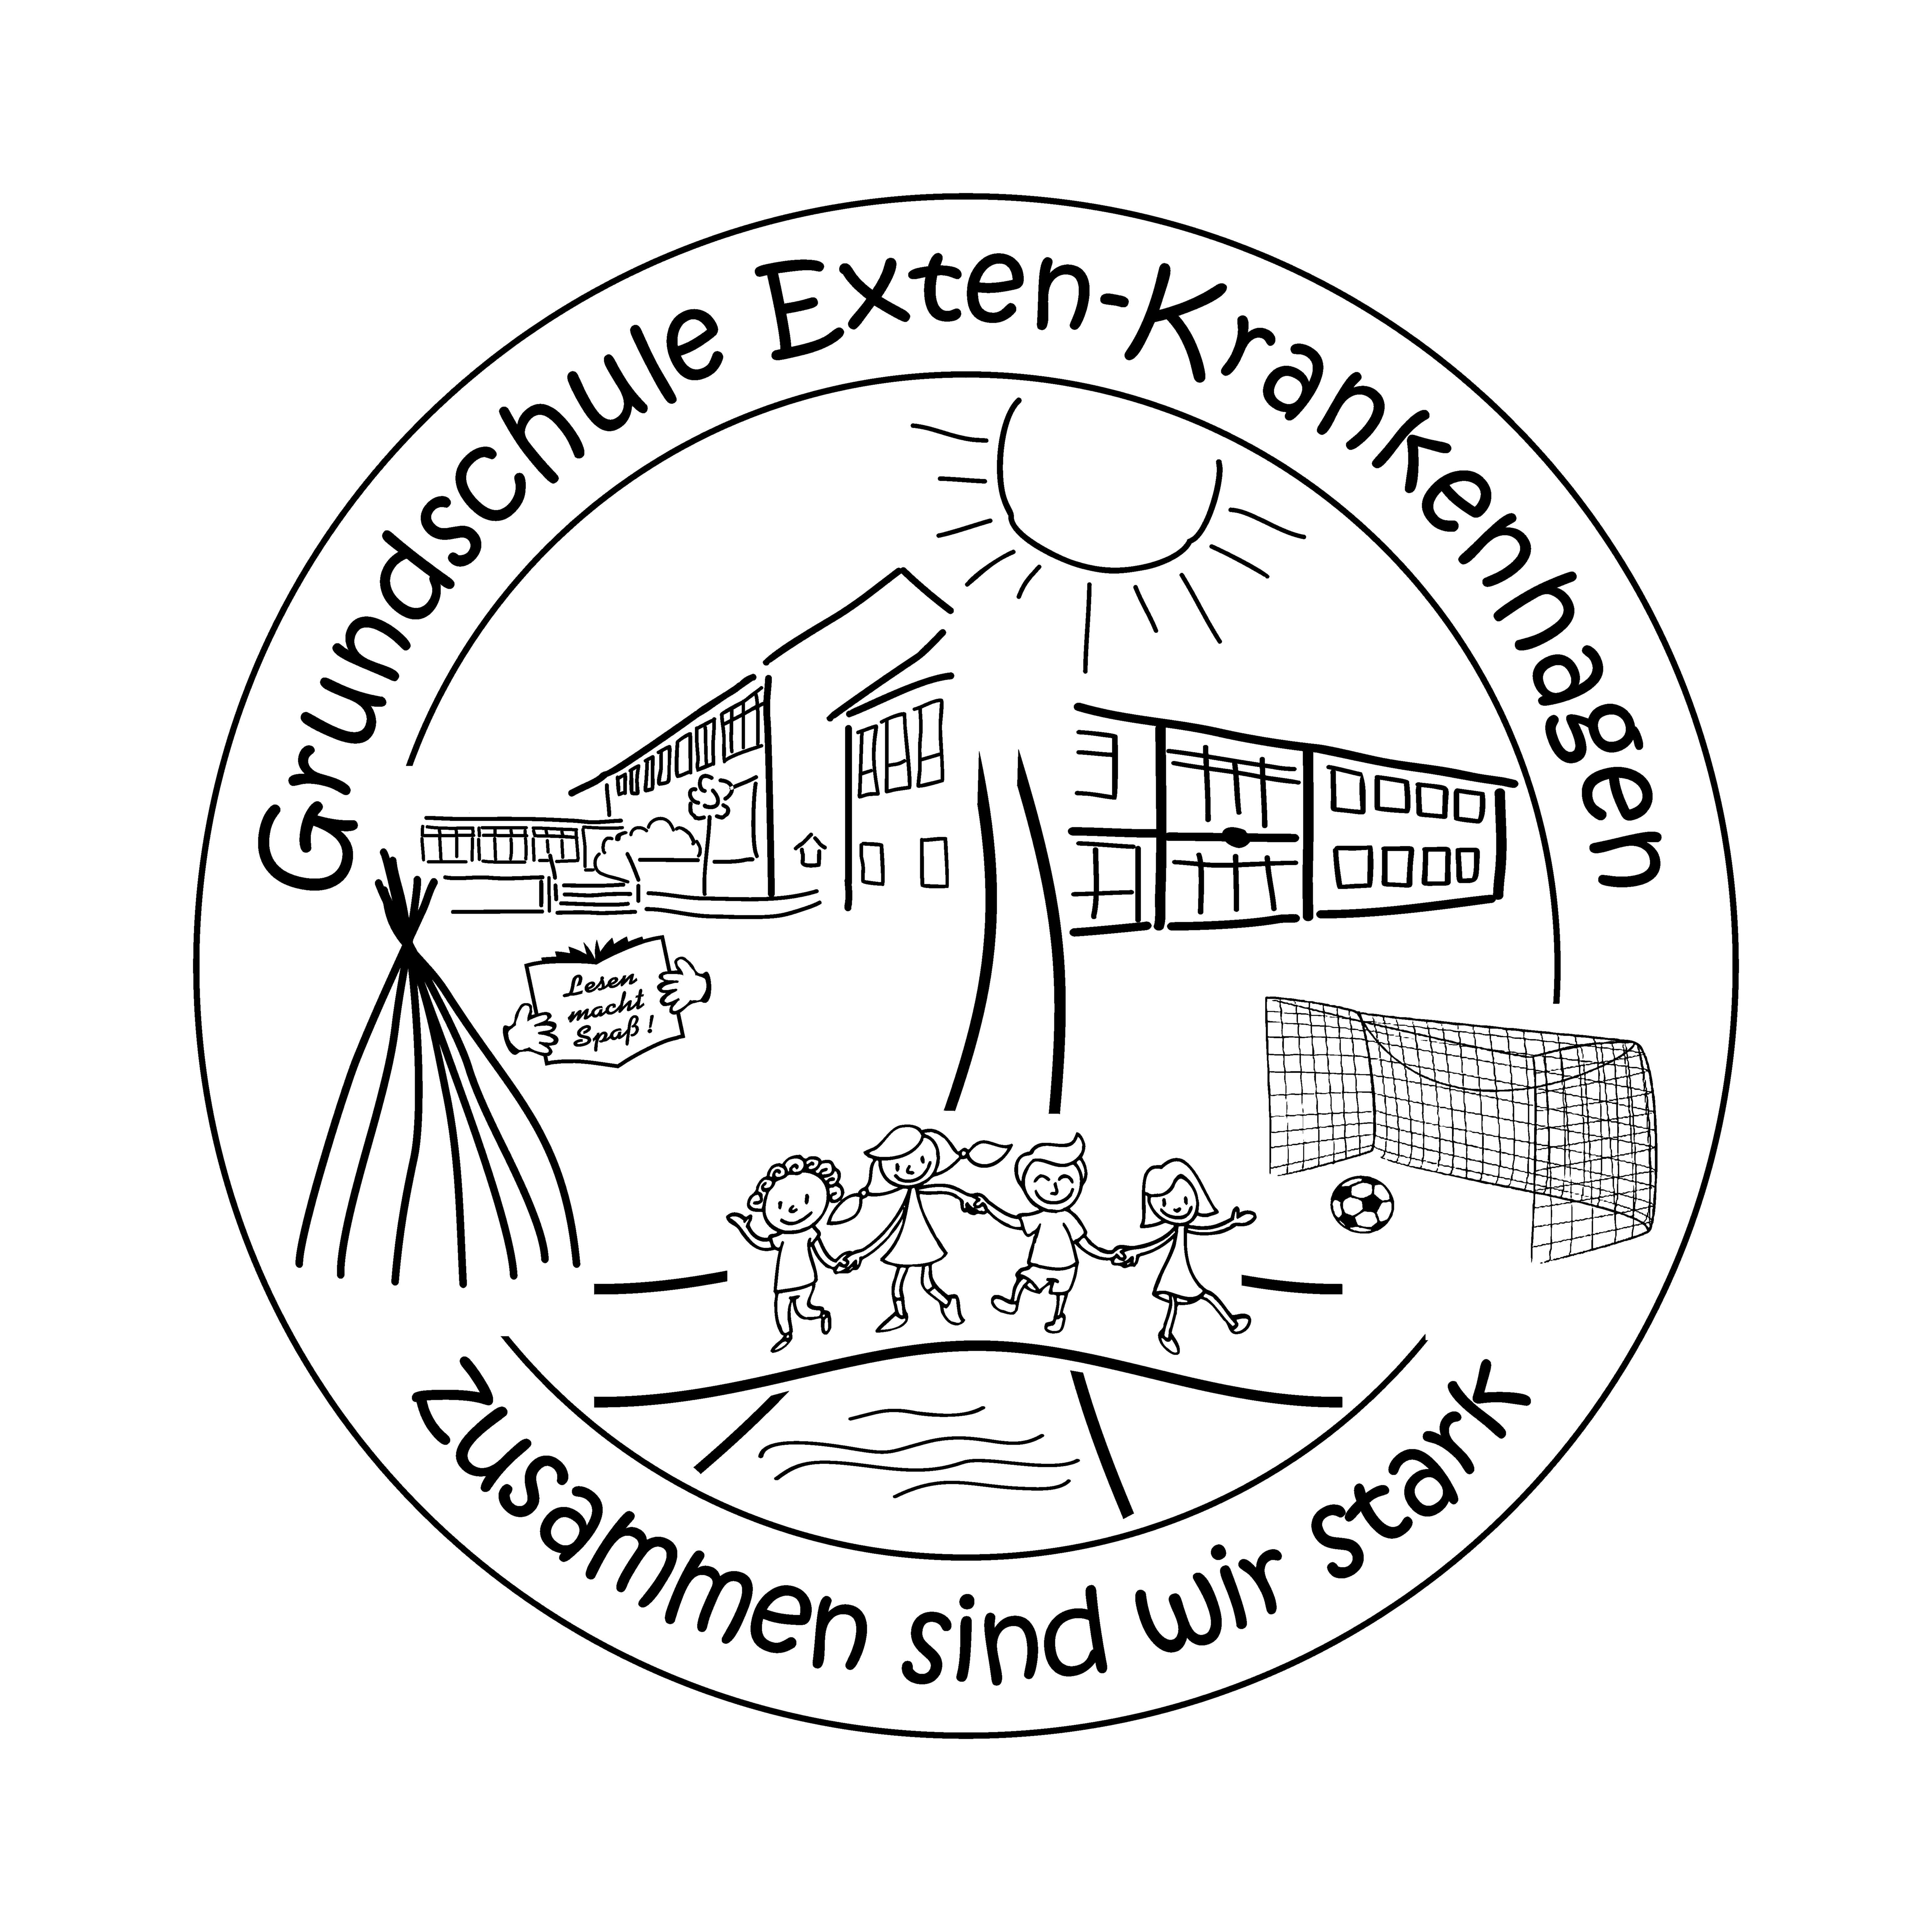 Grundschule Exten-Krankenhagen